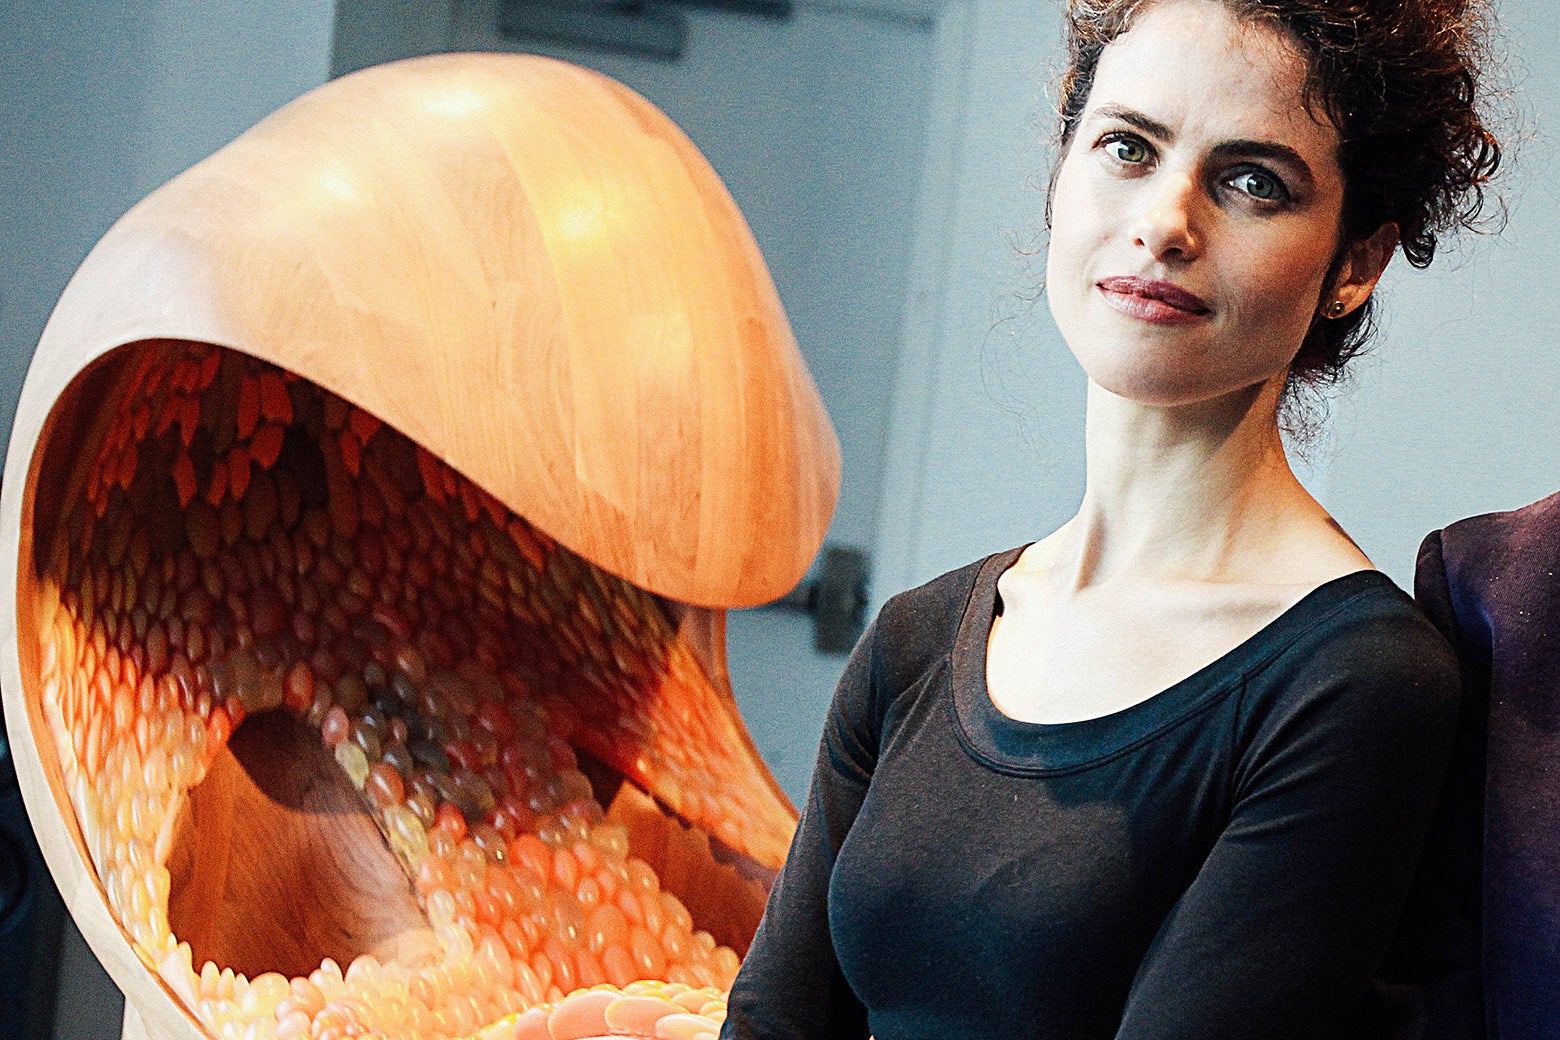 Designer/artist/architect Neri Oxman in front of her piece.